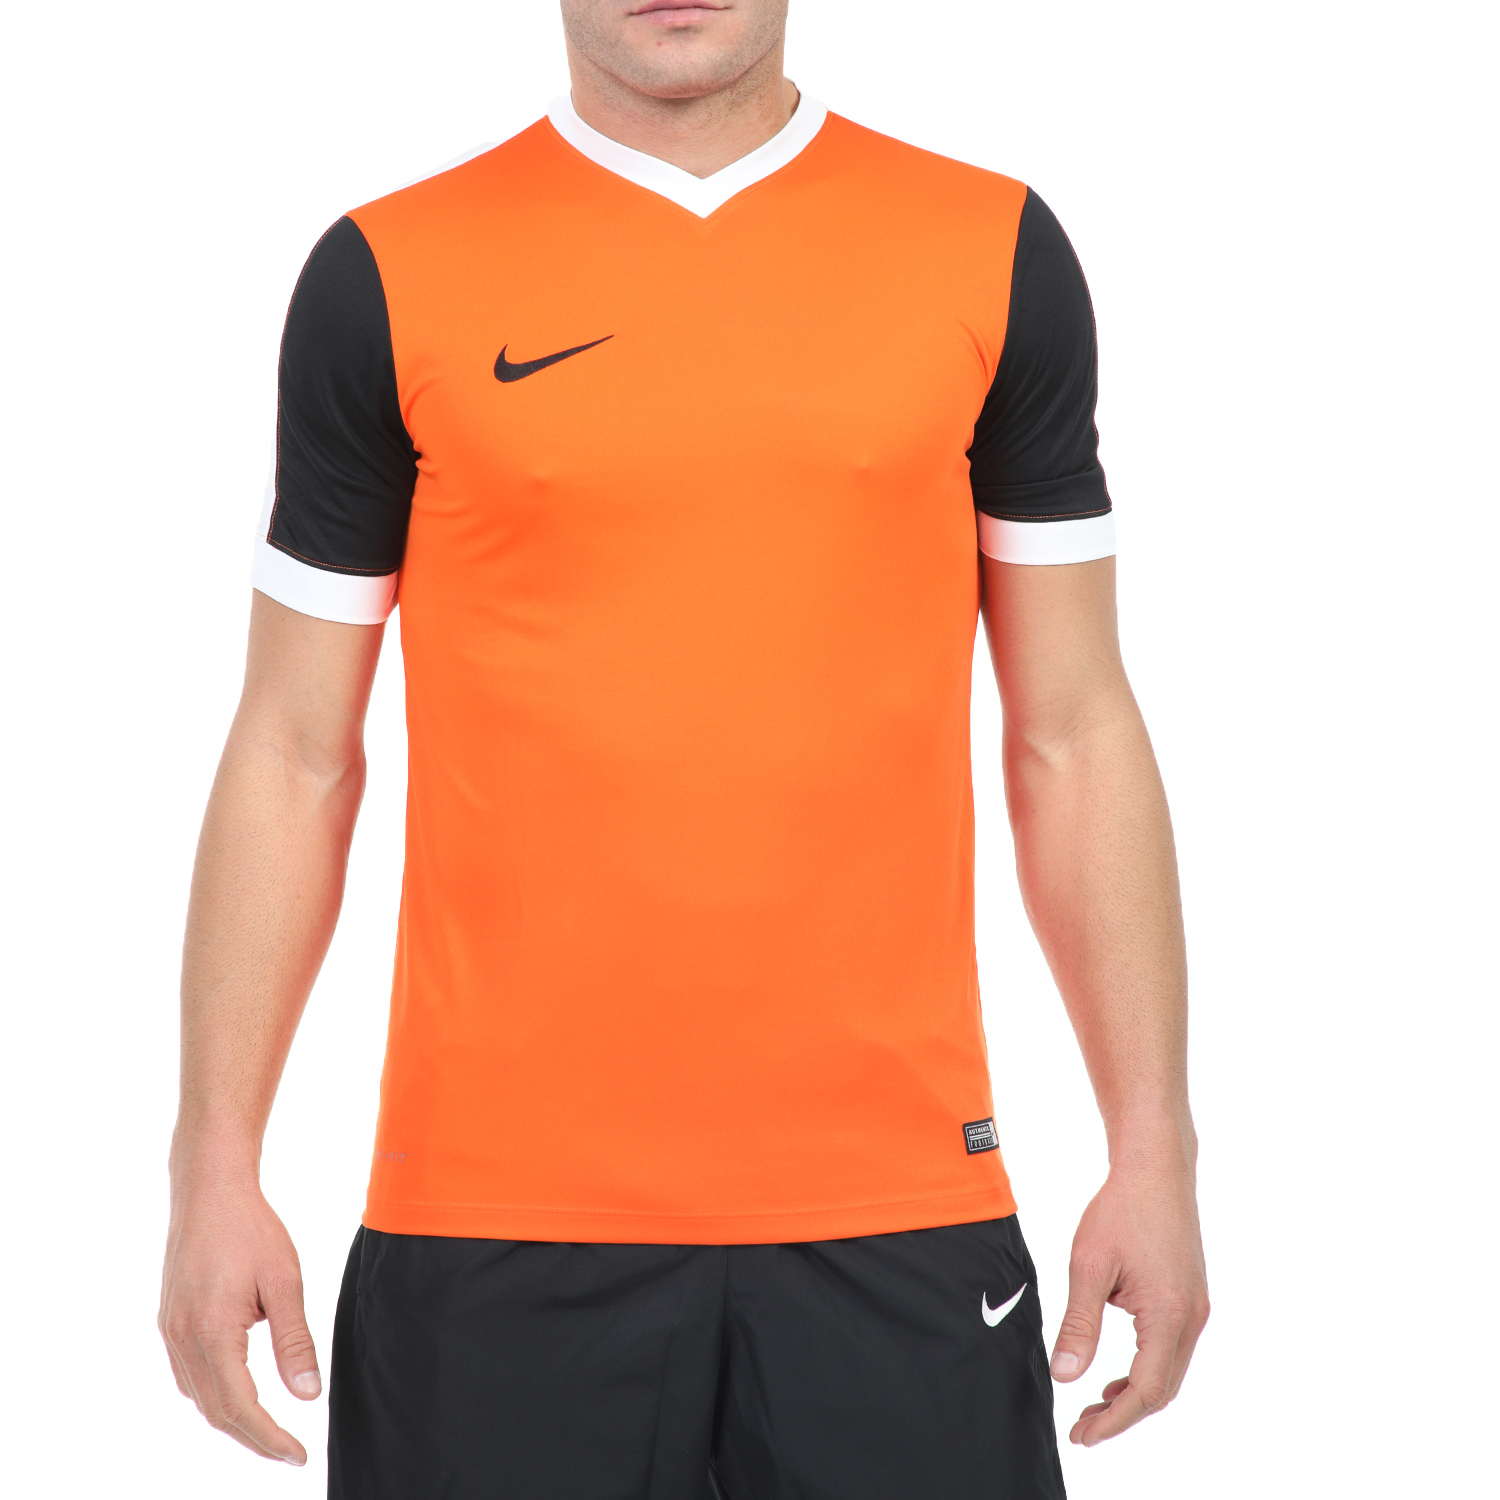 Ανδρικά/Ρούχα/Αθλητικά/T-shirt NIKE - Ανδρικό αθλητικό t-shirt NIKE STRIKER IV JSY πορτοκαλί